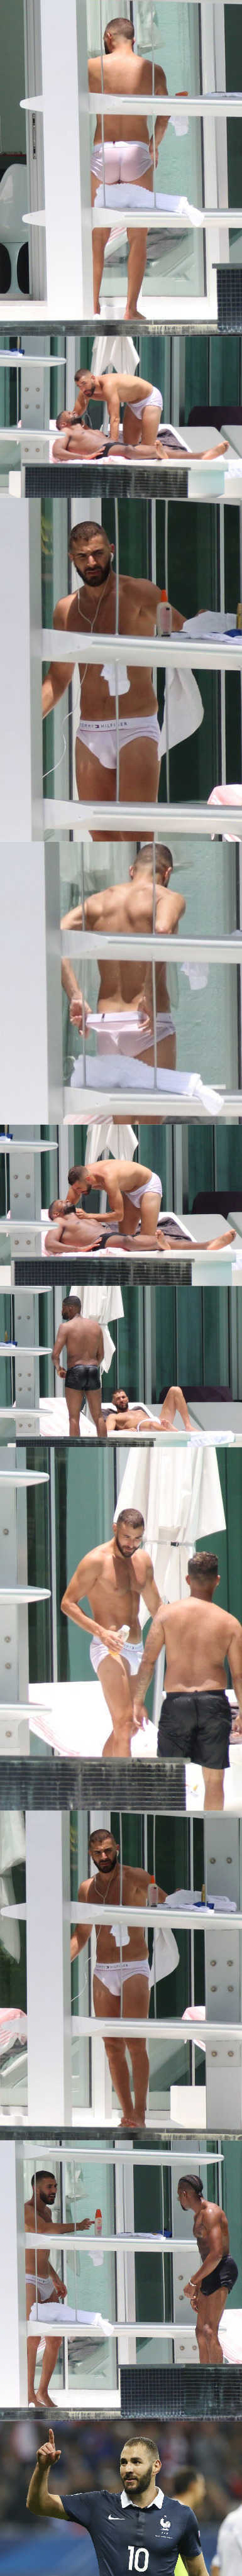 footballer Karim Benzema caught in undies